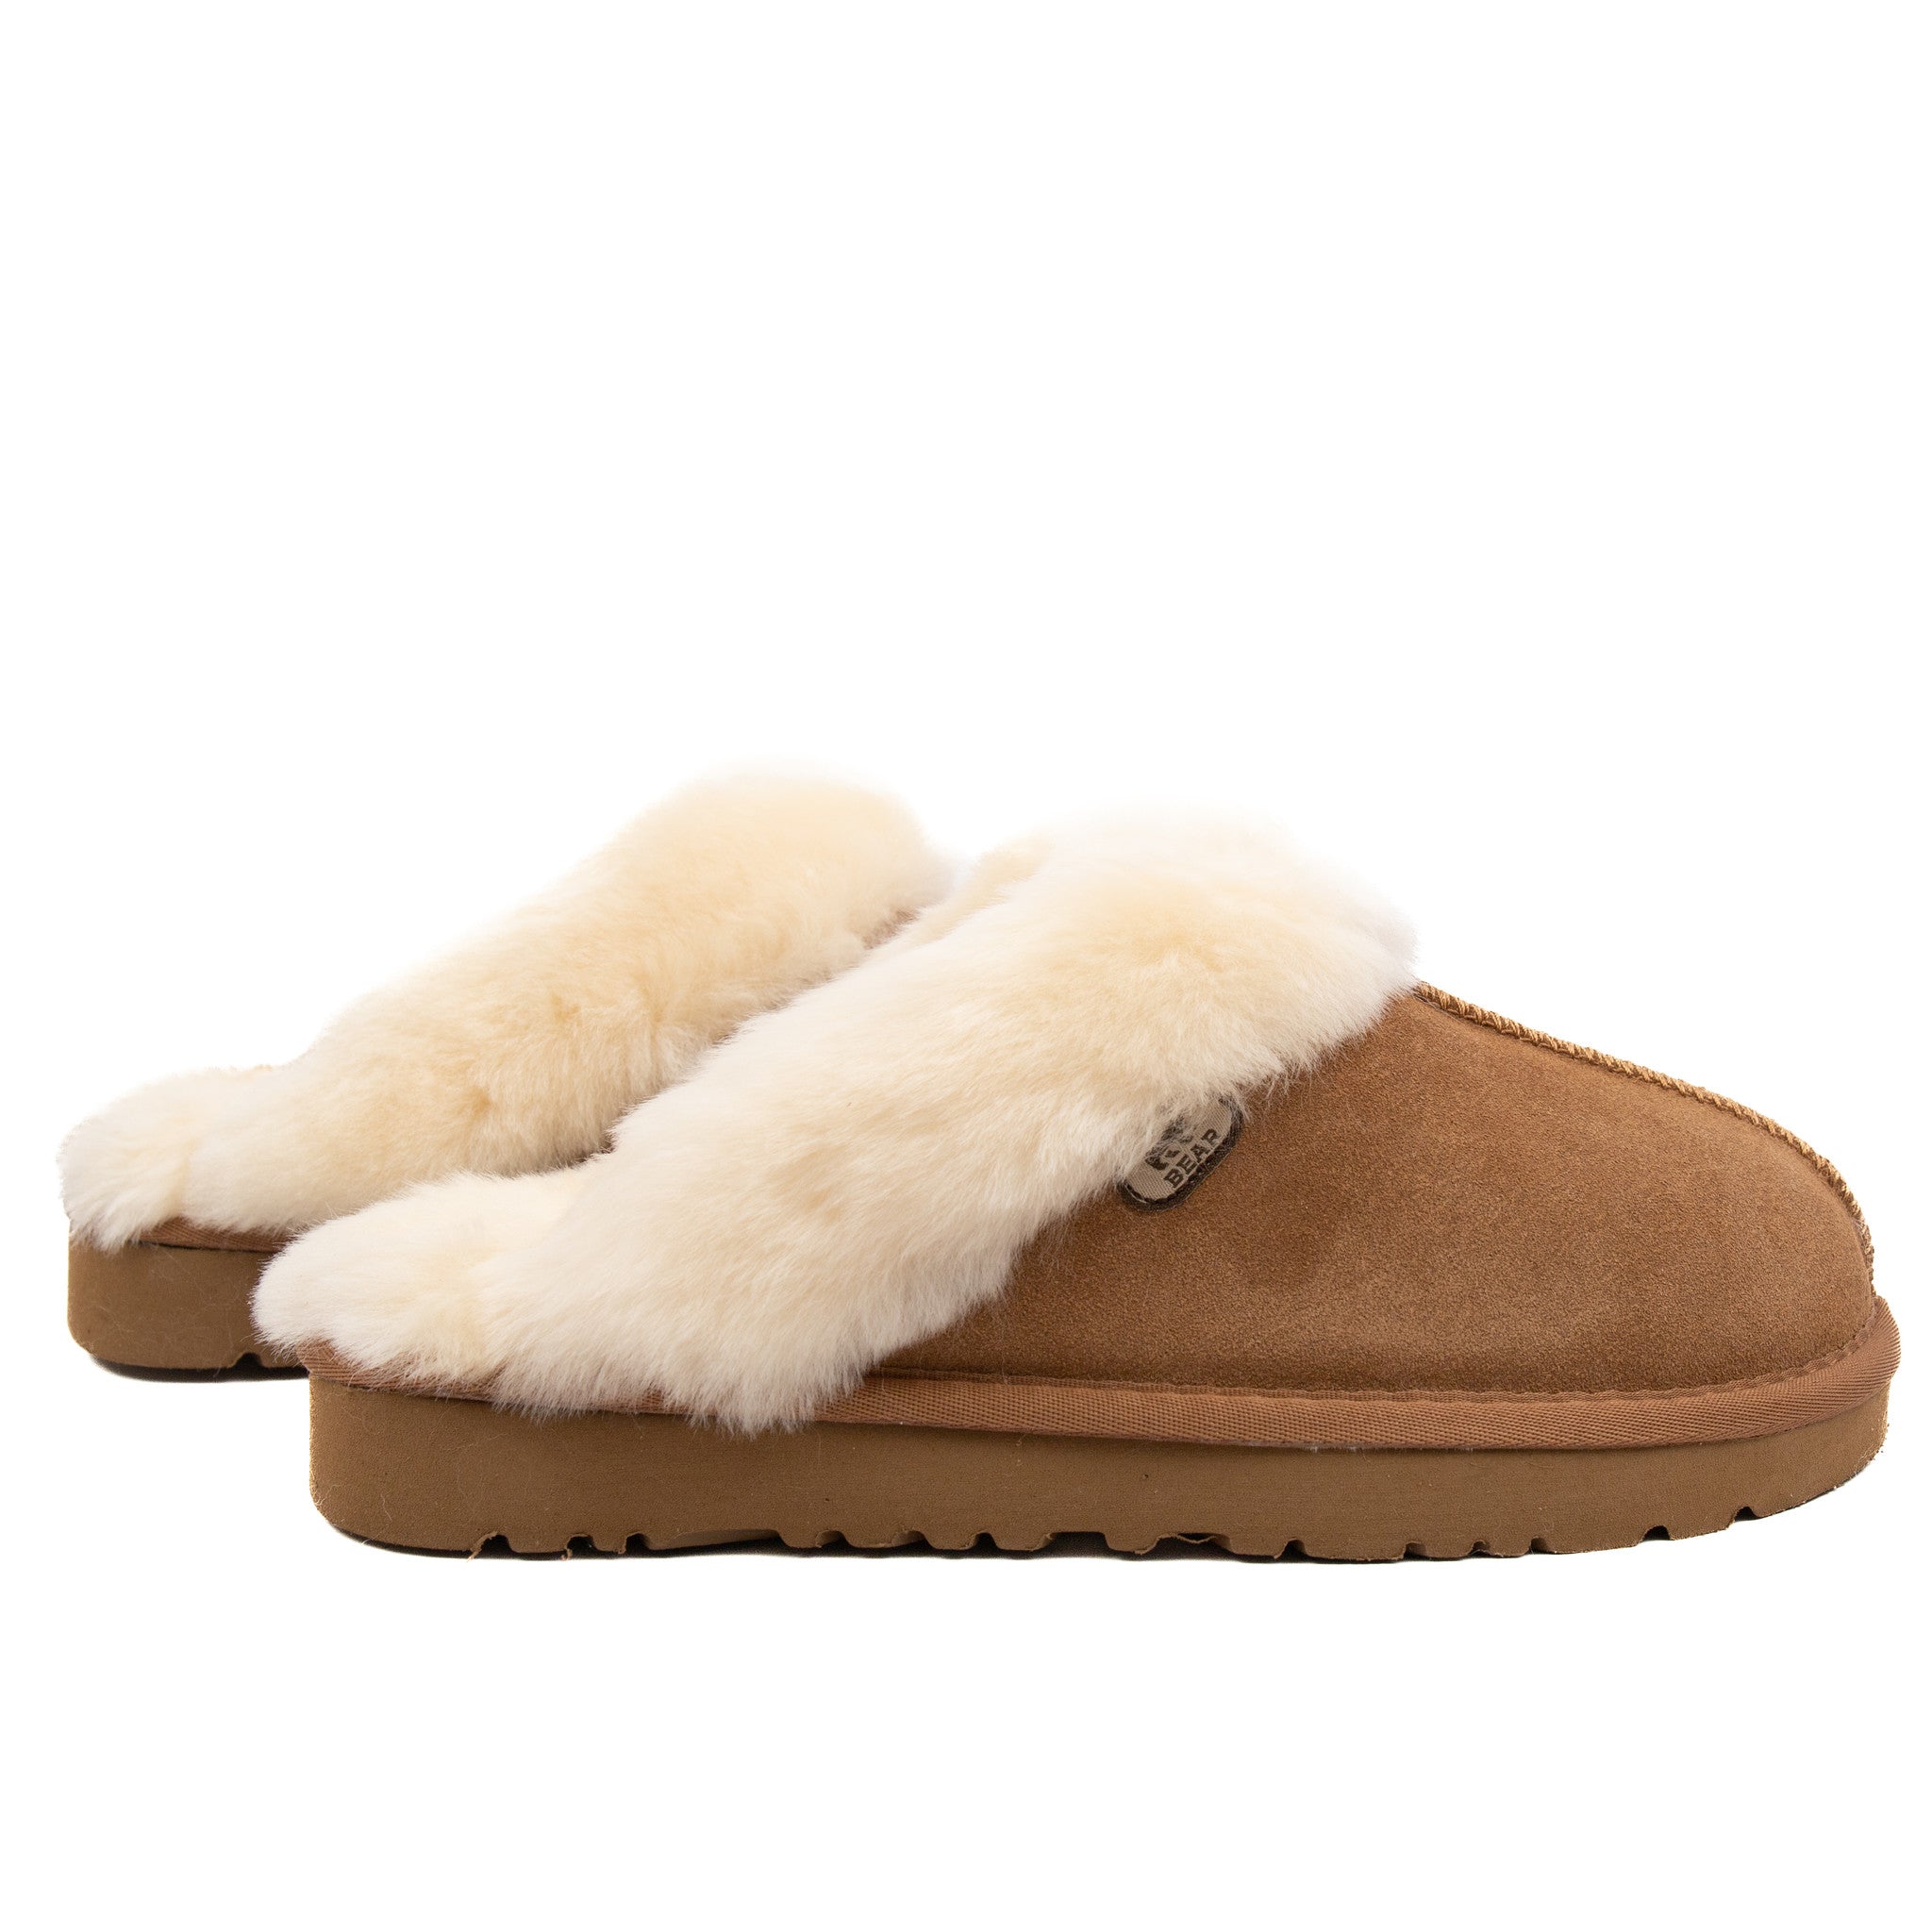 Shop slippers 'Teddy' in beige?